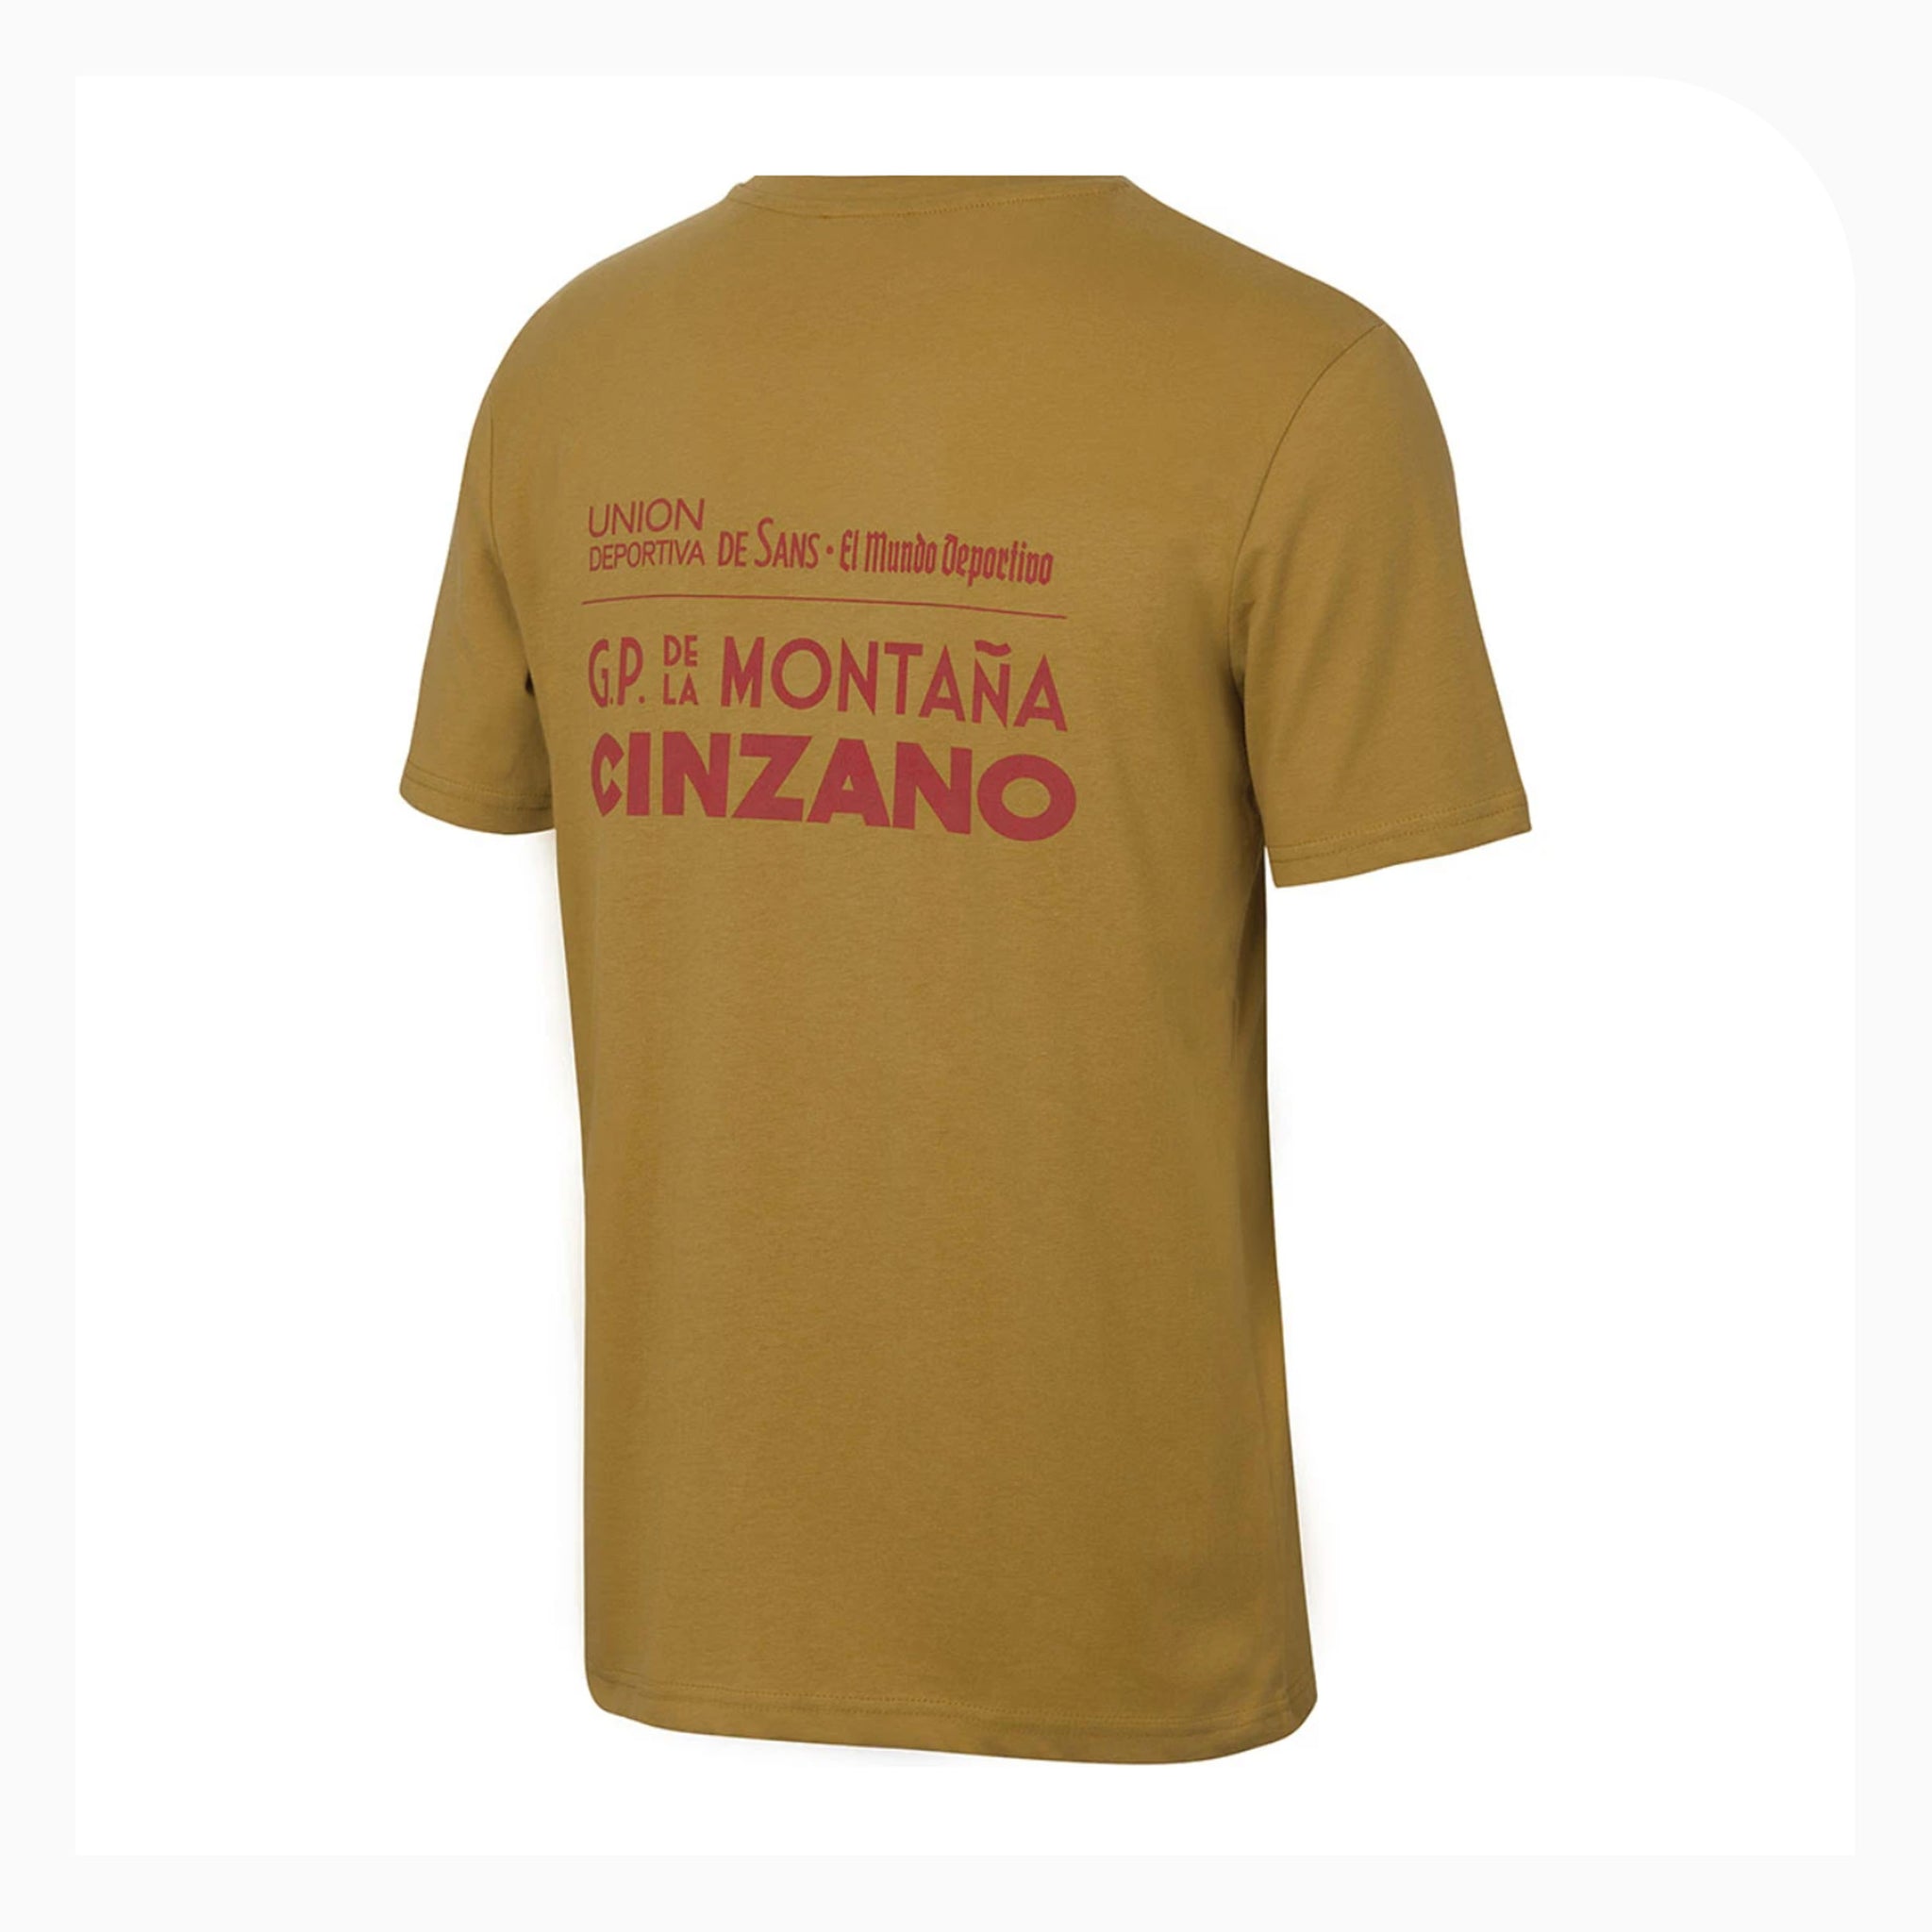 Handmade Cyclist T Shirt Vuelta Catalunya  - Large  Ochre